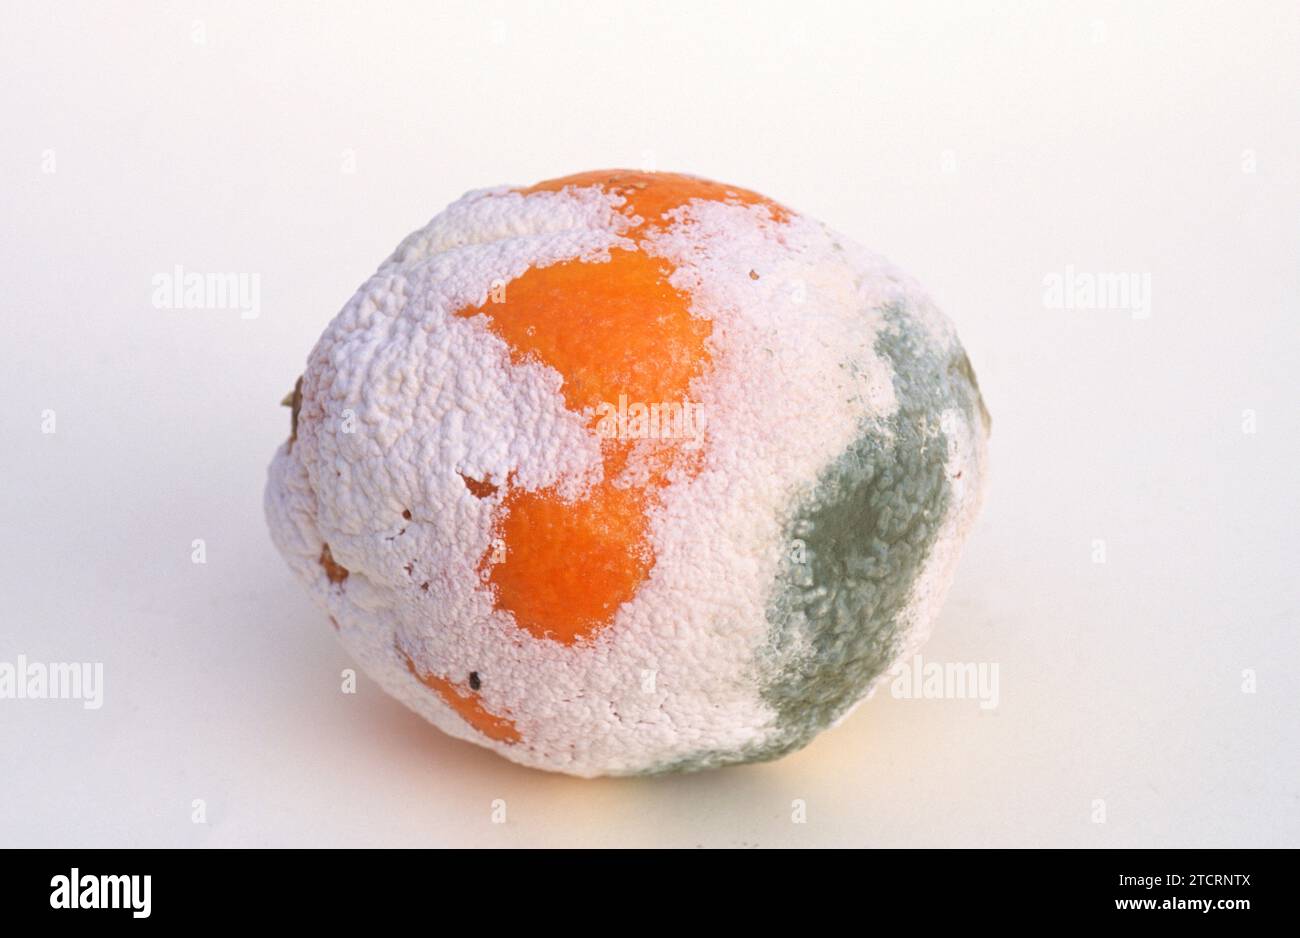 Penicillium digitatum or Aspergillus digitatus colonizing an orange. Stock Photo